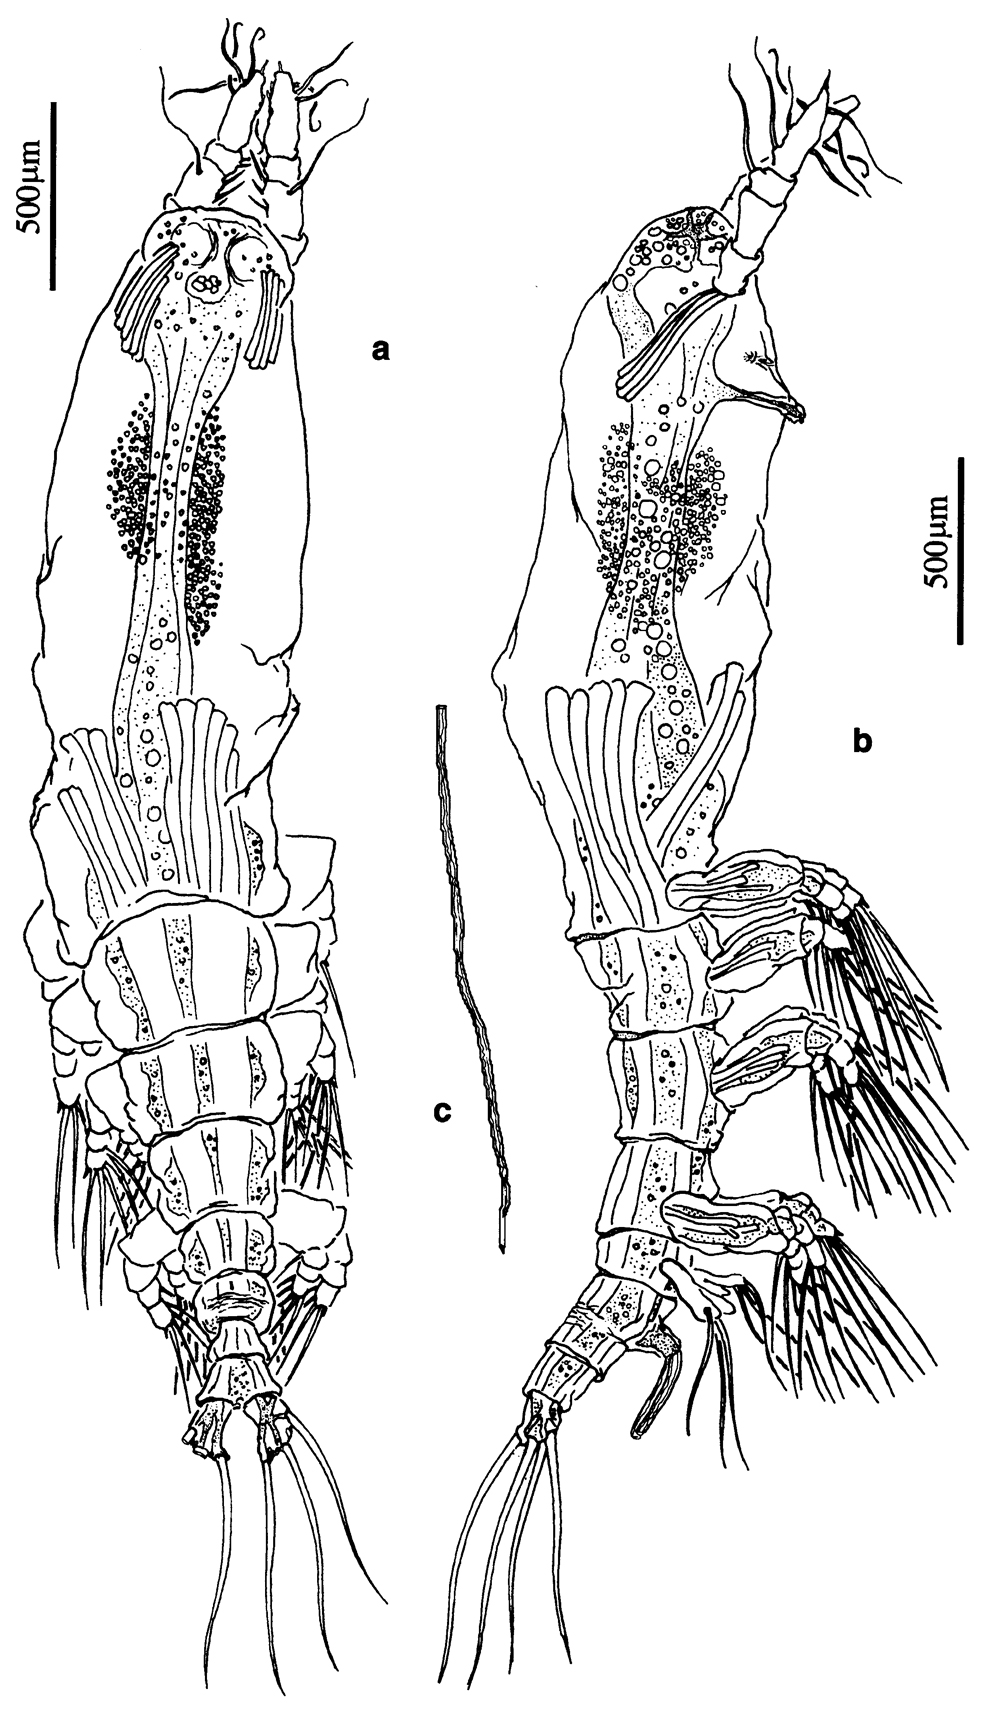 Espce Cymbasoma germanicum - Planche 1 de figures morphologiques